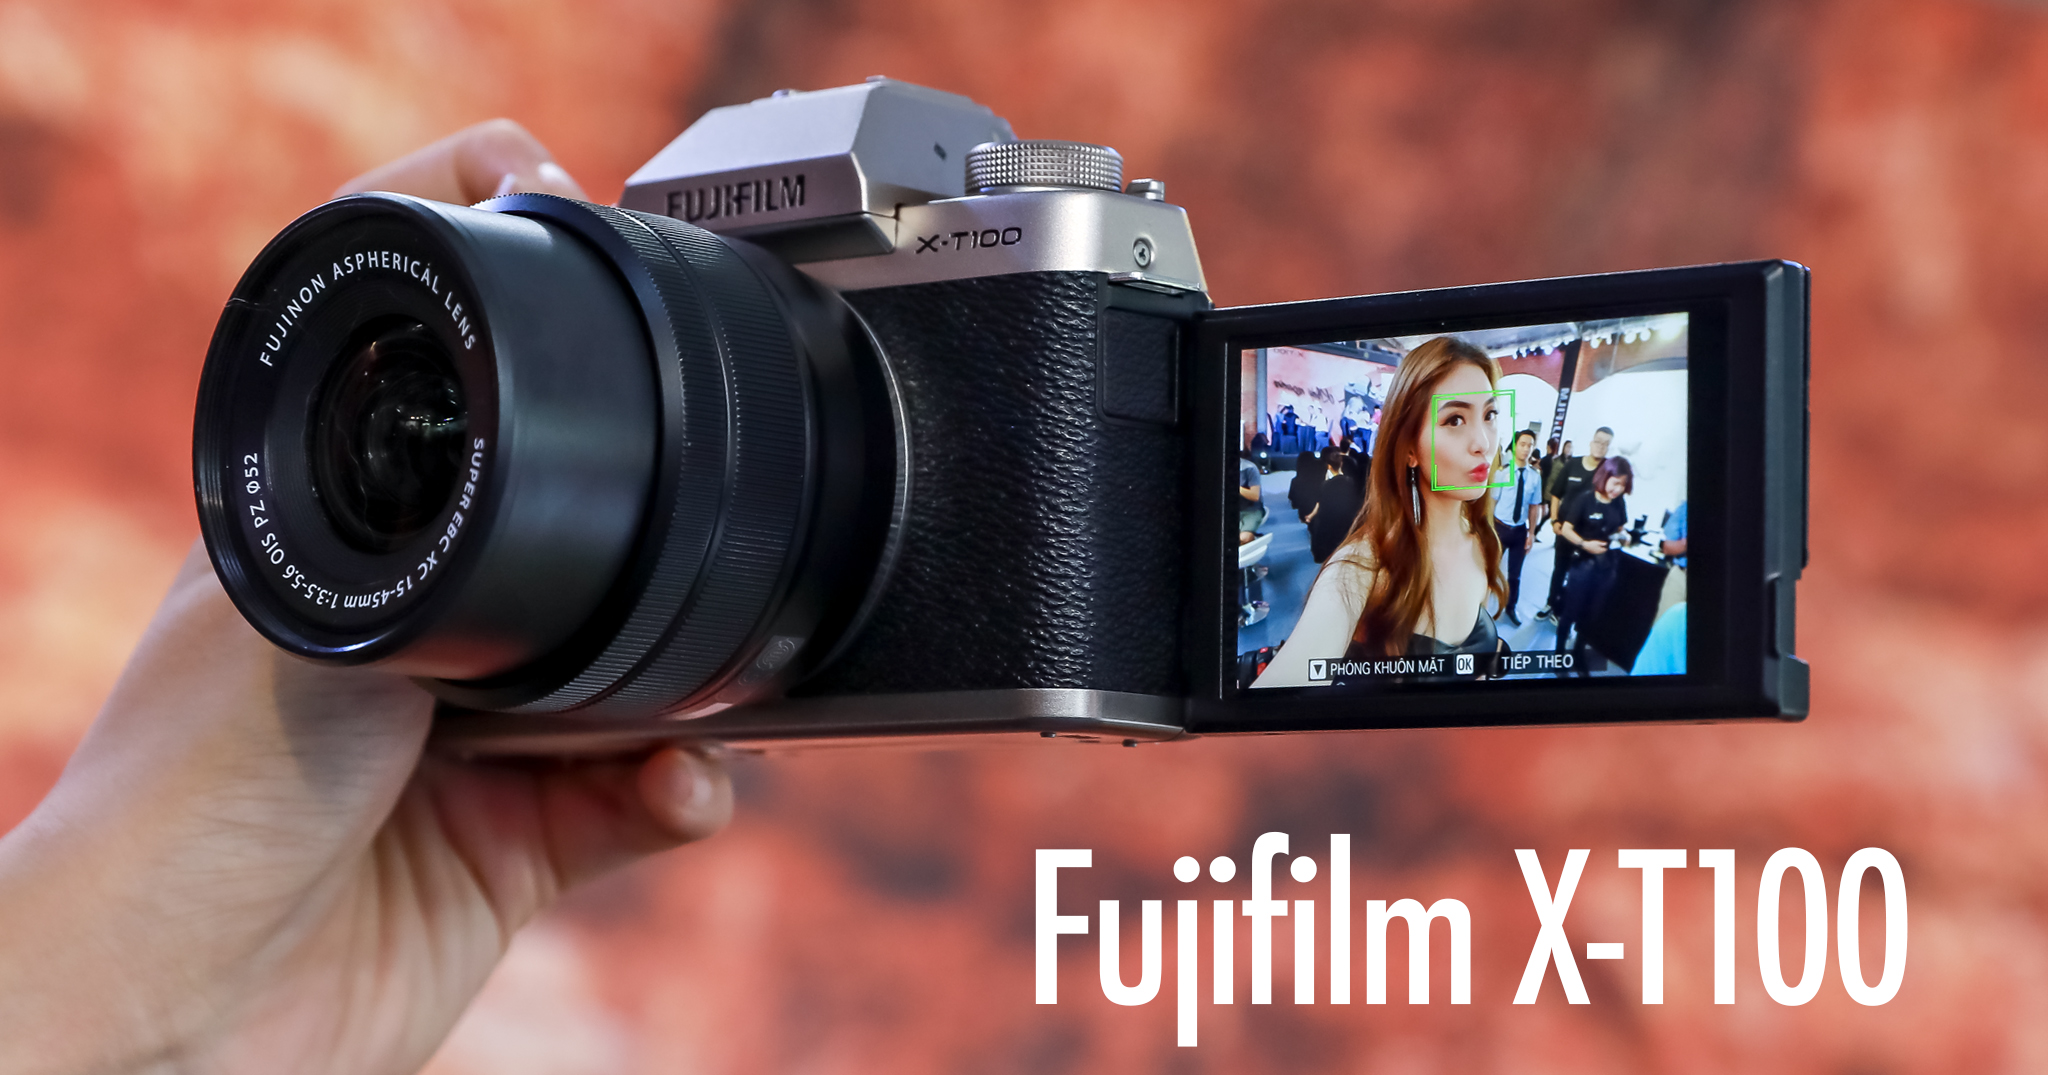 Trên tay nhanh Fujifilm X-T100 mới được giới thiệu ở Việt nam, giá 14,490,000VND